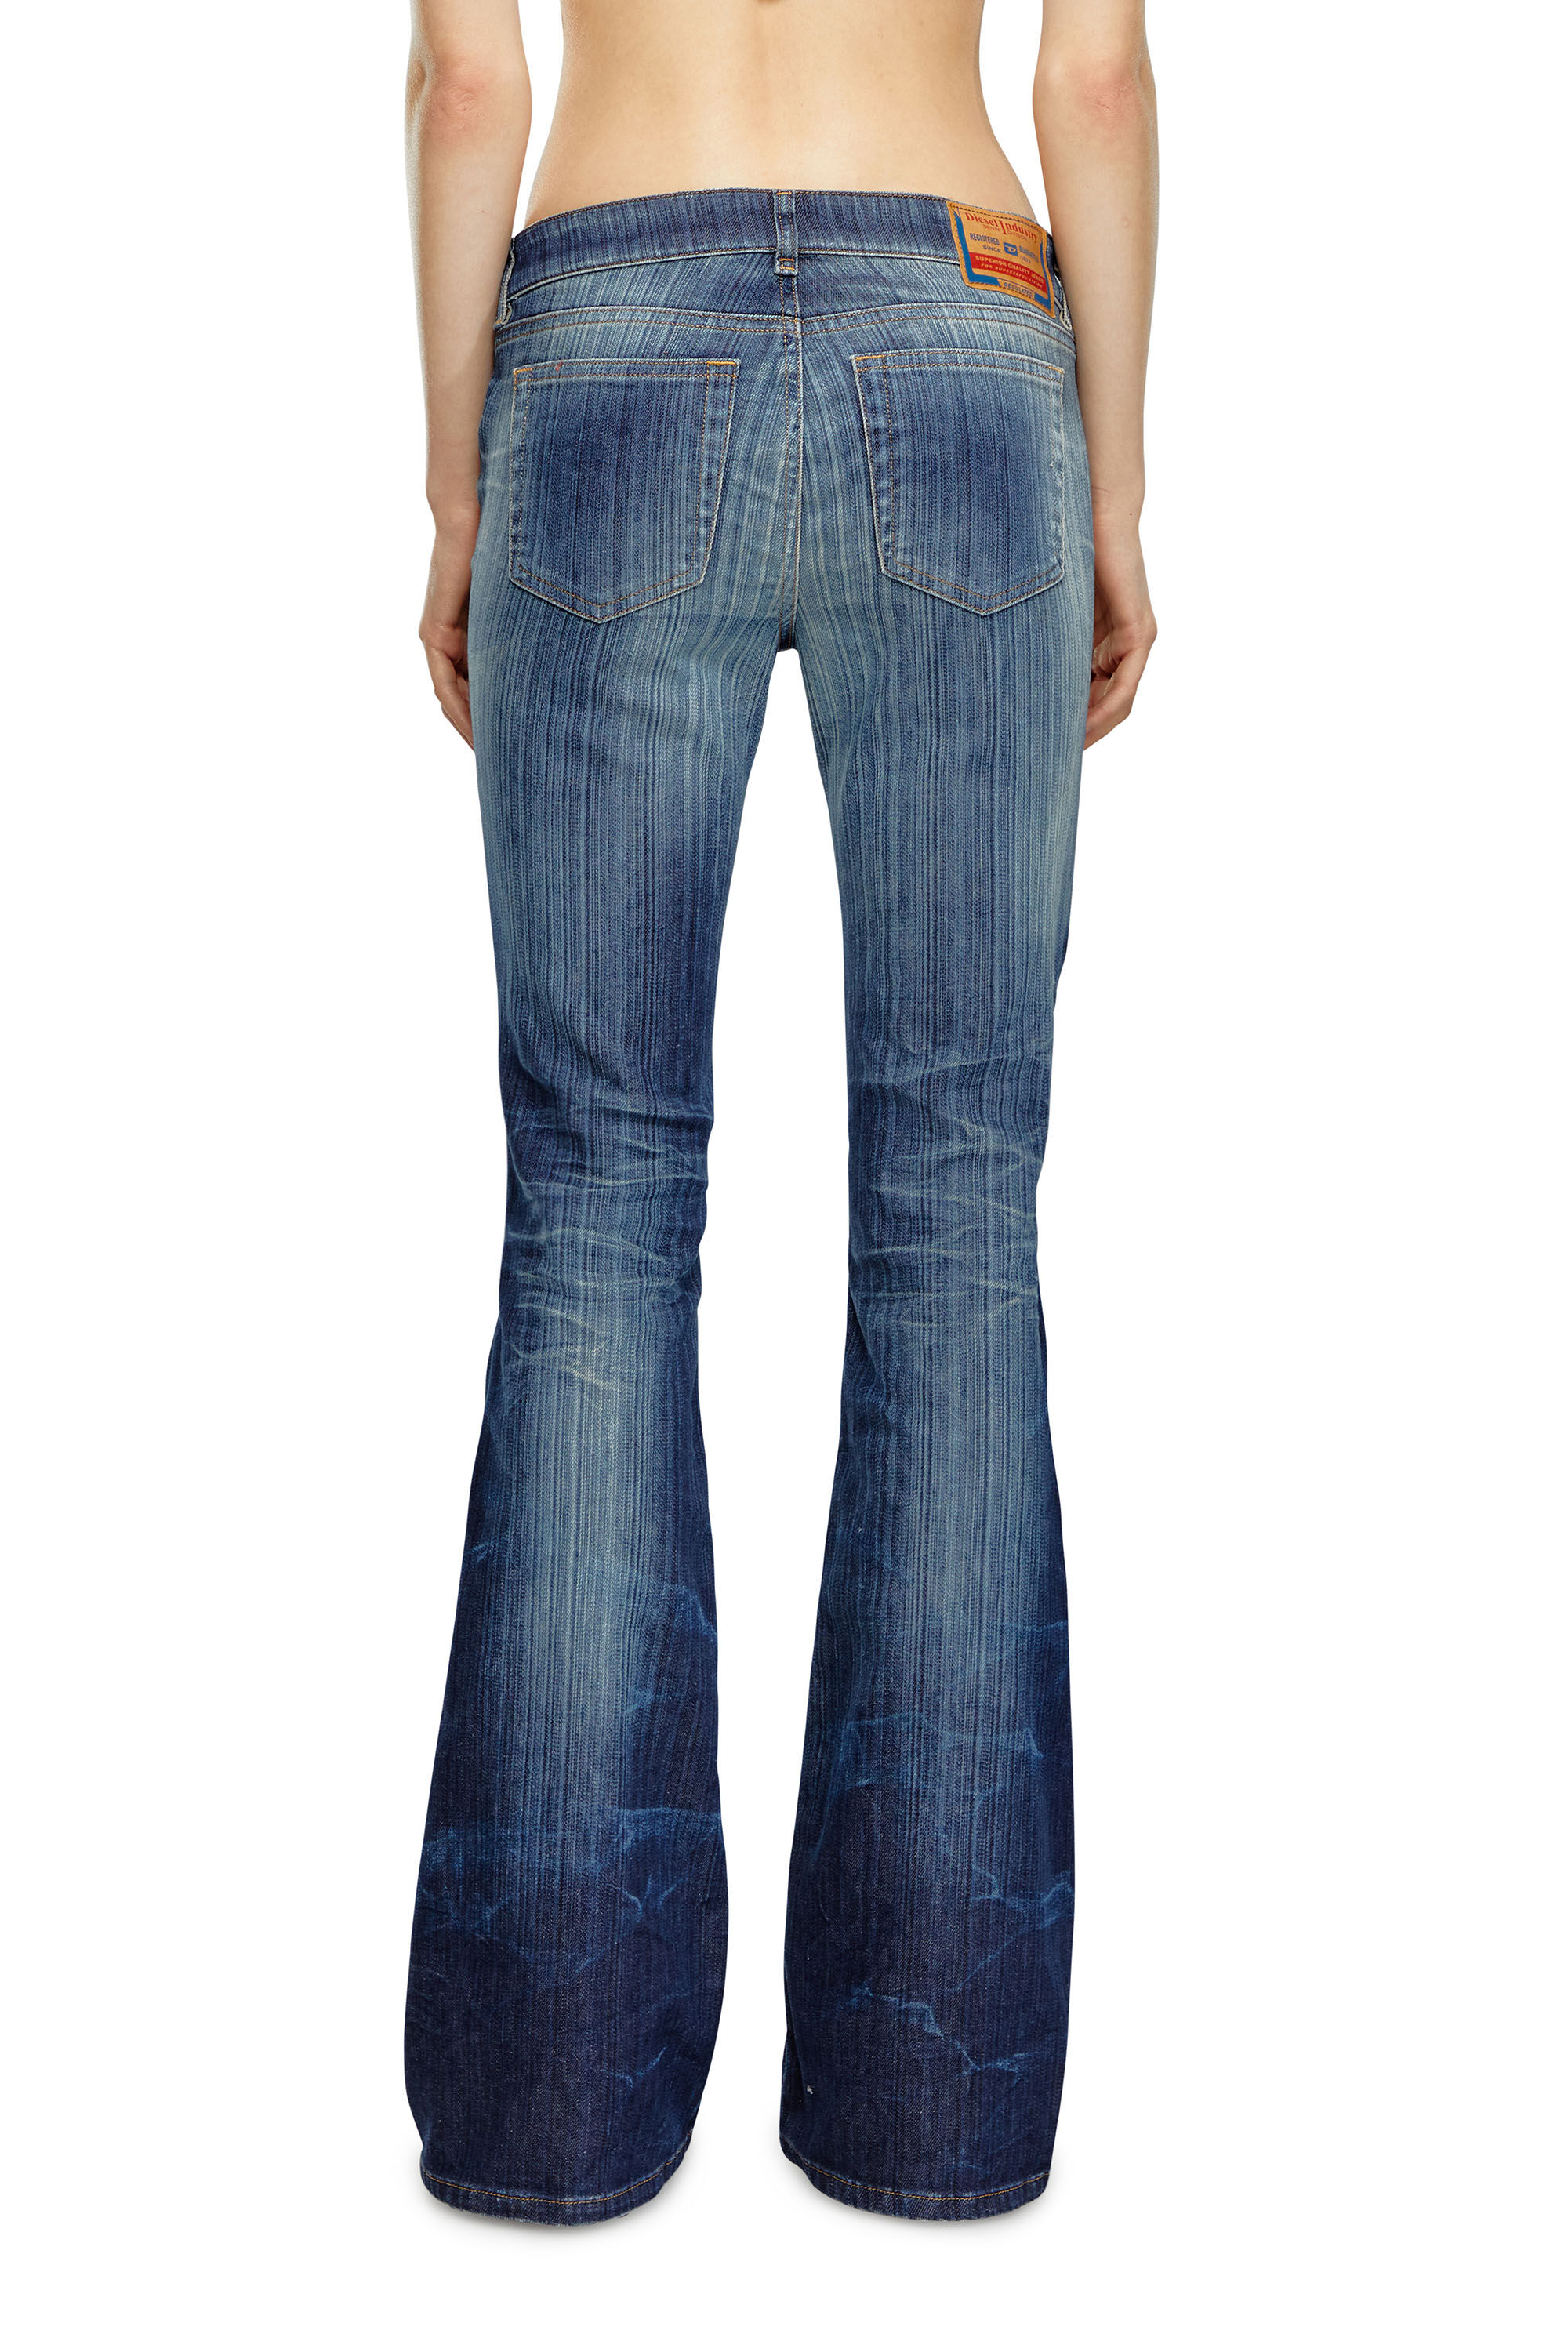 ブーツカットフレア Jeans - 1969 D-Ebbey | ダークブルー 